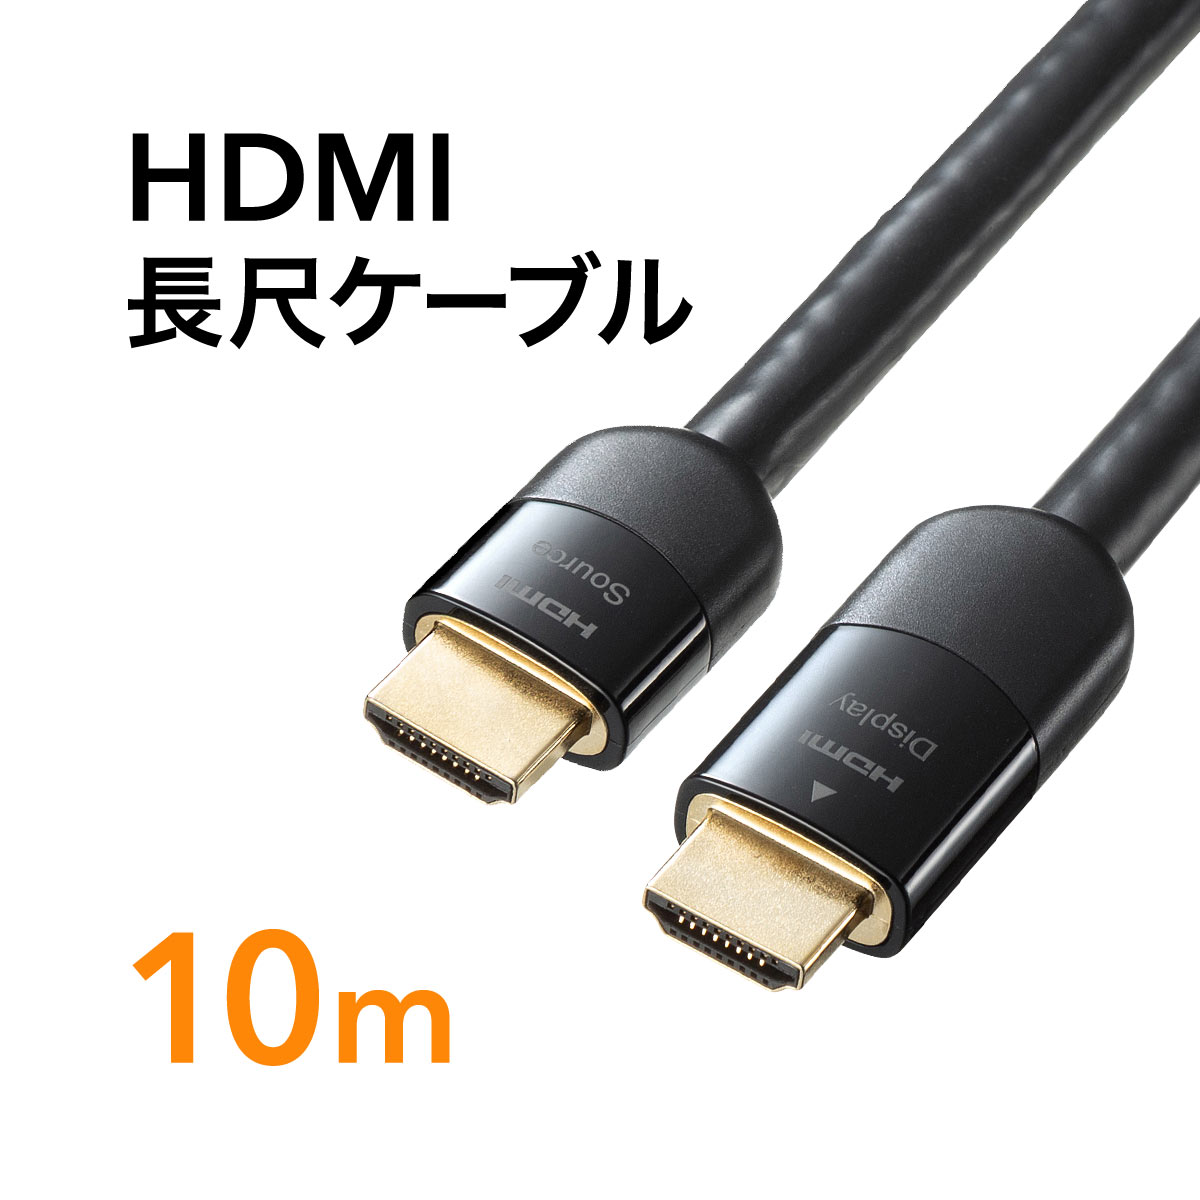 【あす楽】【代引不可】HDMI延長ケーブル 1.5m 4K60P対応 18Gbps 高速伝送 HDR対応 HDMIケーブル 延長コード 3重シールド構造 金属製シェル採用 ブラック エレコム DH-HDEX15BK